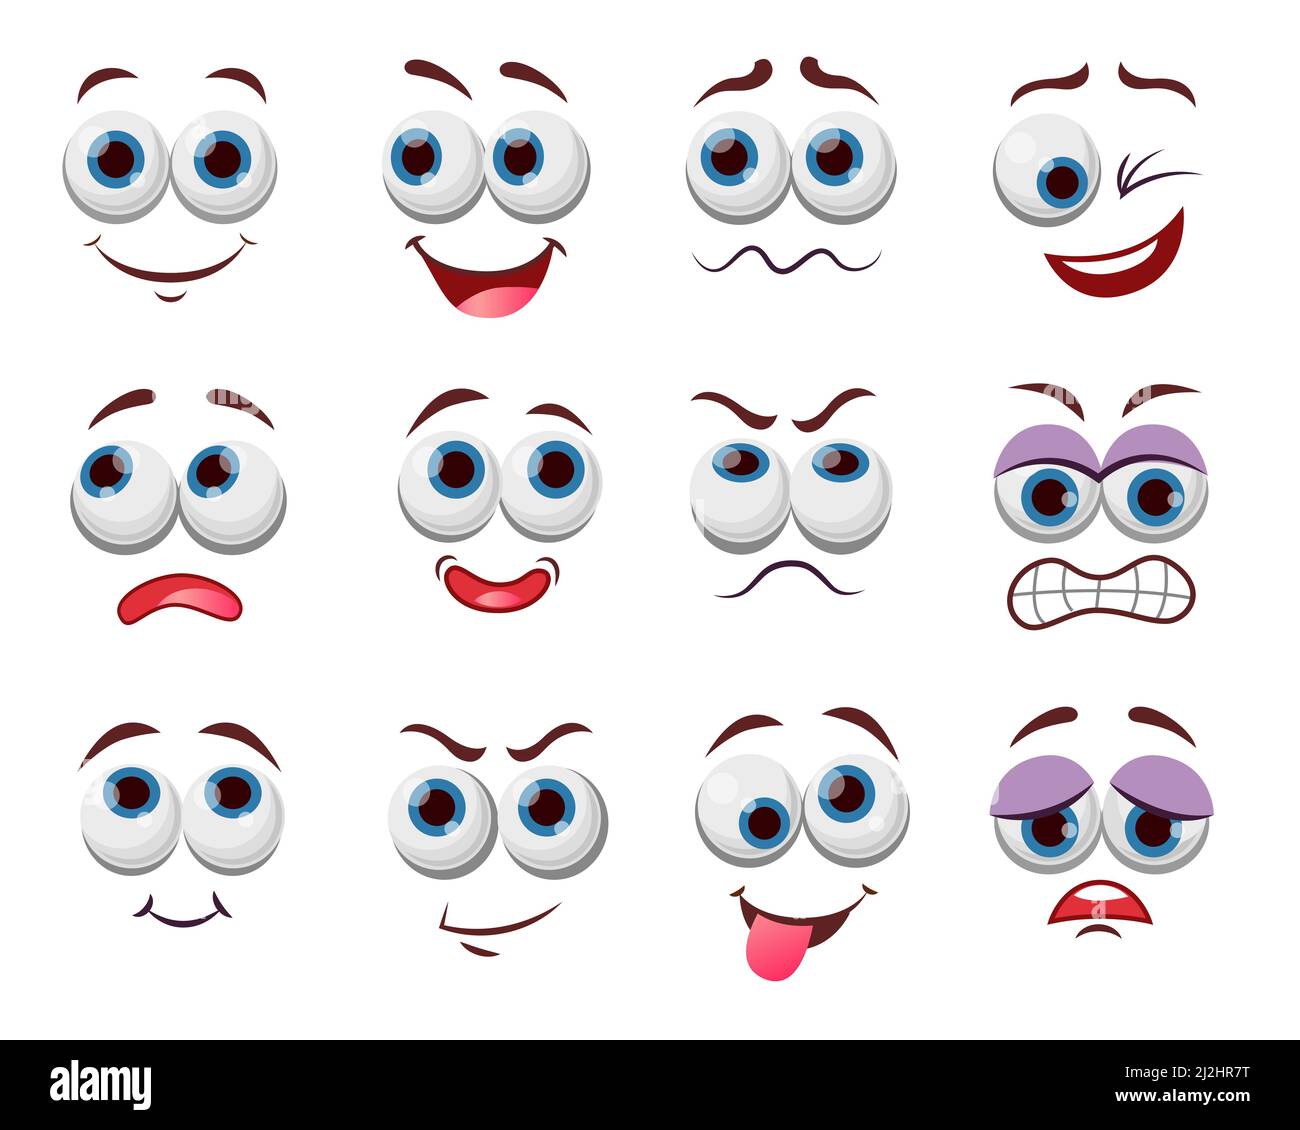 Comic Gesichtsausdrücke Vektor Illustrationen Set. Augen und Mund von niedlichen, lustigen oder verärgerten Zeichentrickfigur, Emoticon mit glücklichen Lächeln Zeichnungen isoliert Stock Vektor